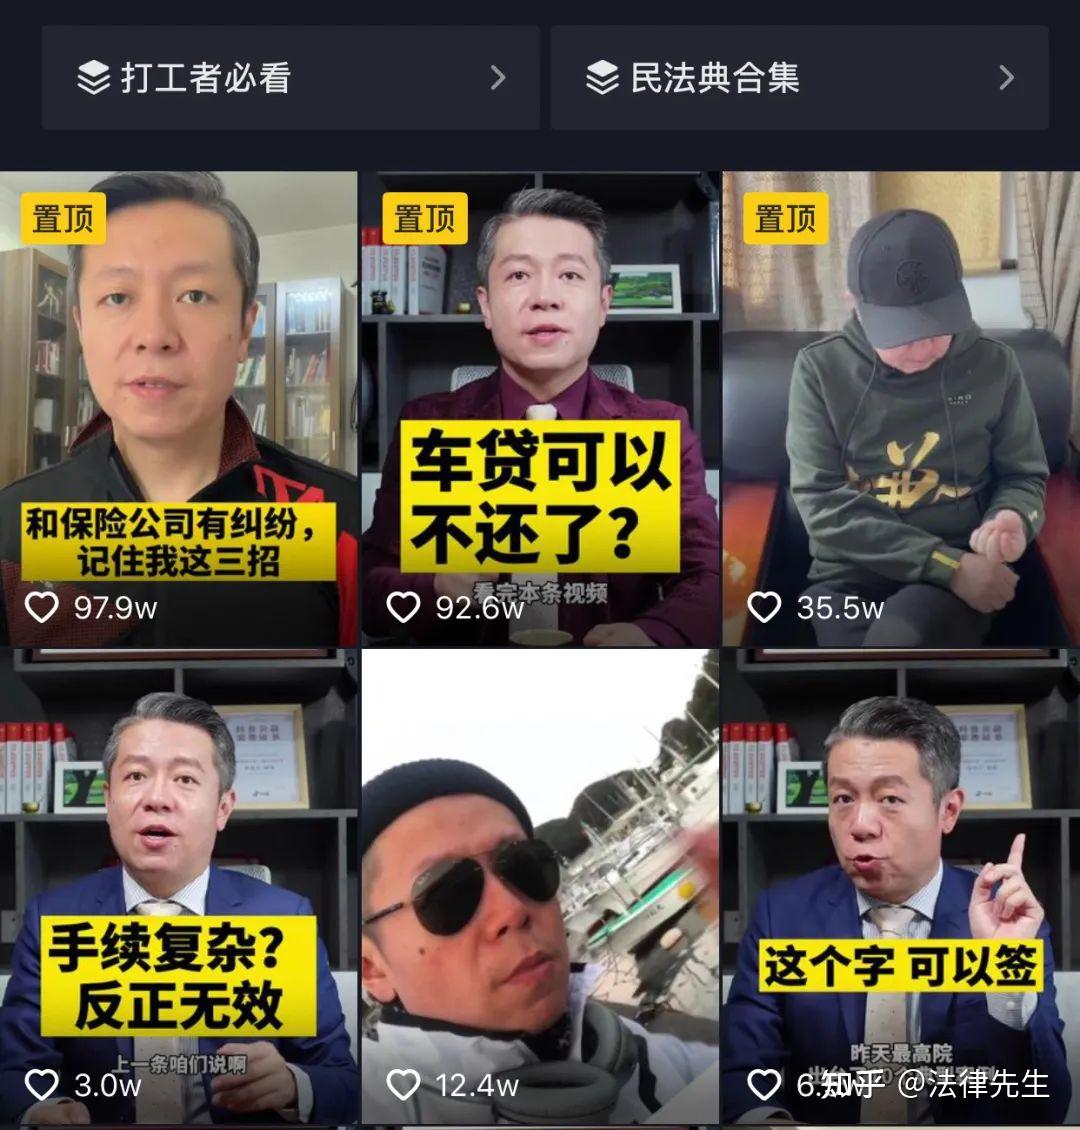 网传杭州汉嘉设计院一前员工因劳资纠纷在公司内燃放烟花爆竹，如何看待这种「炸楼」行为？ - 知乎